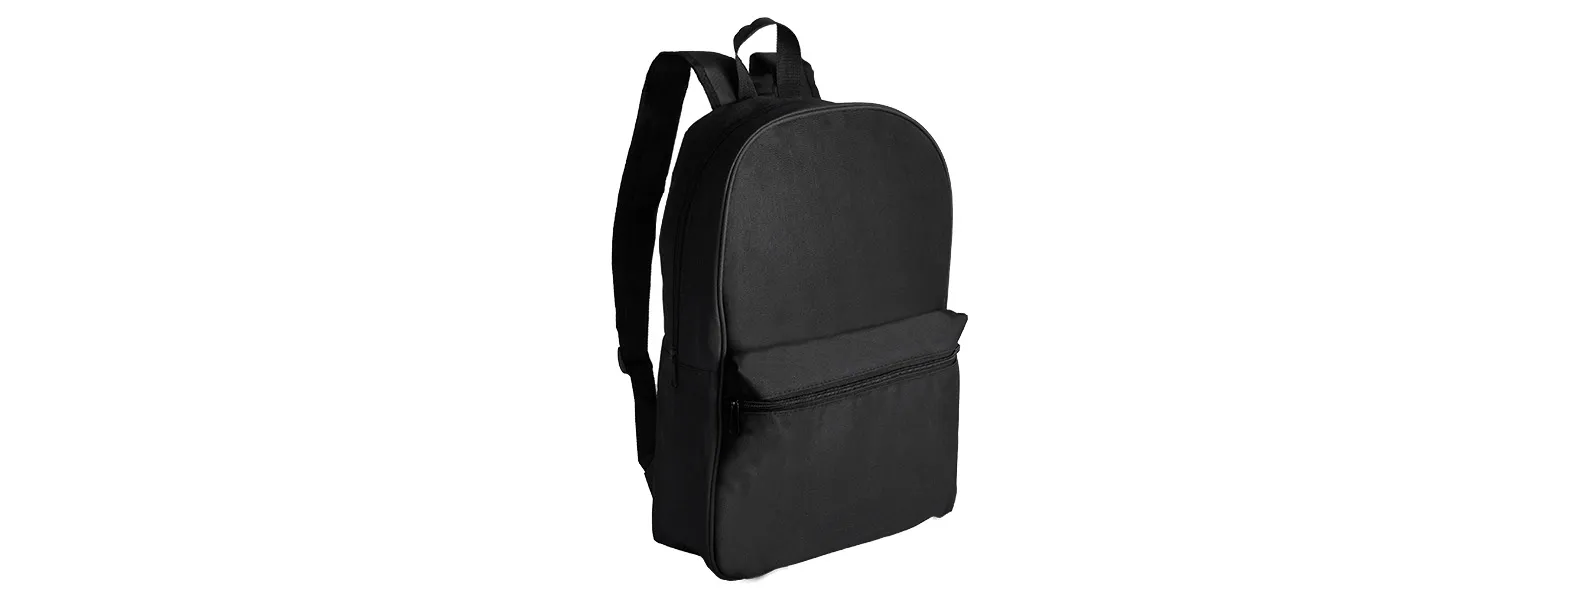 Mochila preta confeccionada em Polyester 600D. Conta com bolso principal e bolso frontal em zíper horizontal, alças ajustáveis e alça de mão.